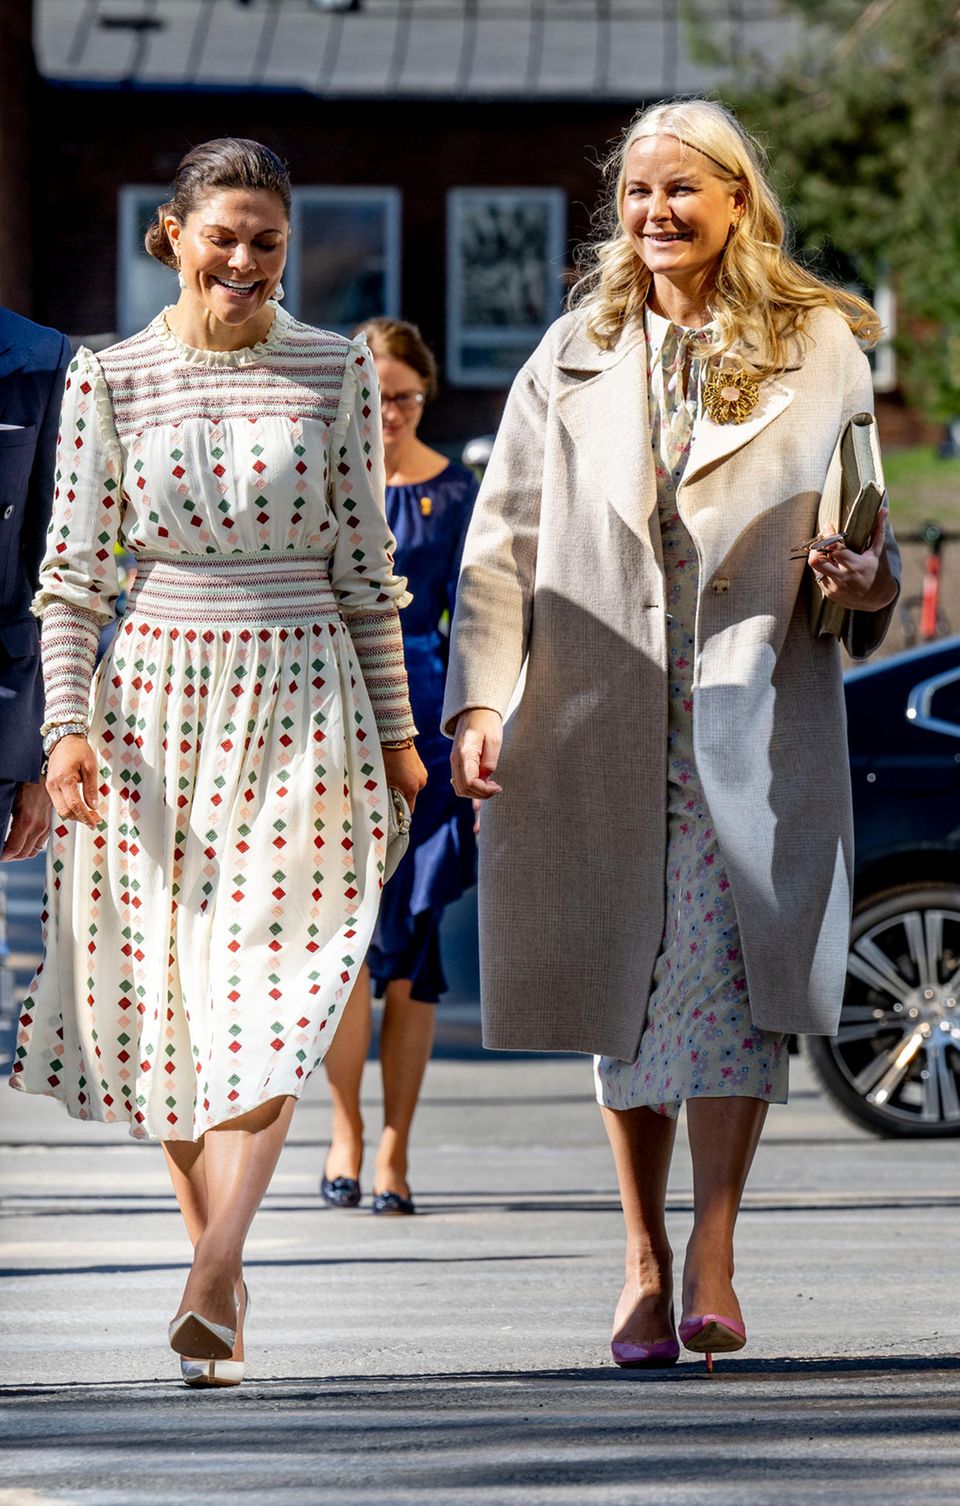 Bei der Ankunft des norwegischen Kronprinzenpaares in Schweden scheinen die Prinzessinnen nicht nur charakterlich auf einer Wellenlänge zu sein, auch die Outfits der beiden harmonieren perfekt miteinander. Während sich Prinzessin Victoria für ein gemustertes Kleid mit Statement-Ohrringen entscheidet, verzaubert Prinzessin Mette-Marit von Norwegen in einem hellen Kleid mit Blumen-Print. Ihr Outfit rundet die 48-Jährige mit einem beigen Mantel und rosafarbenen Pumps ab. 